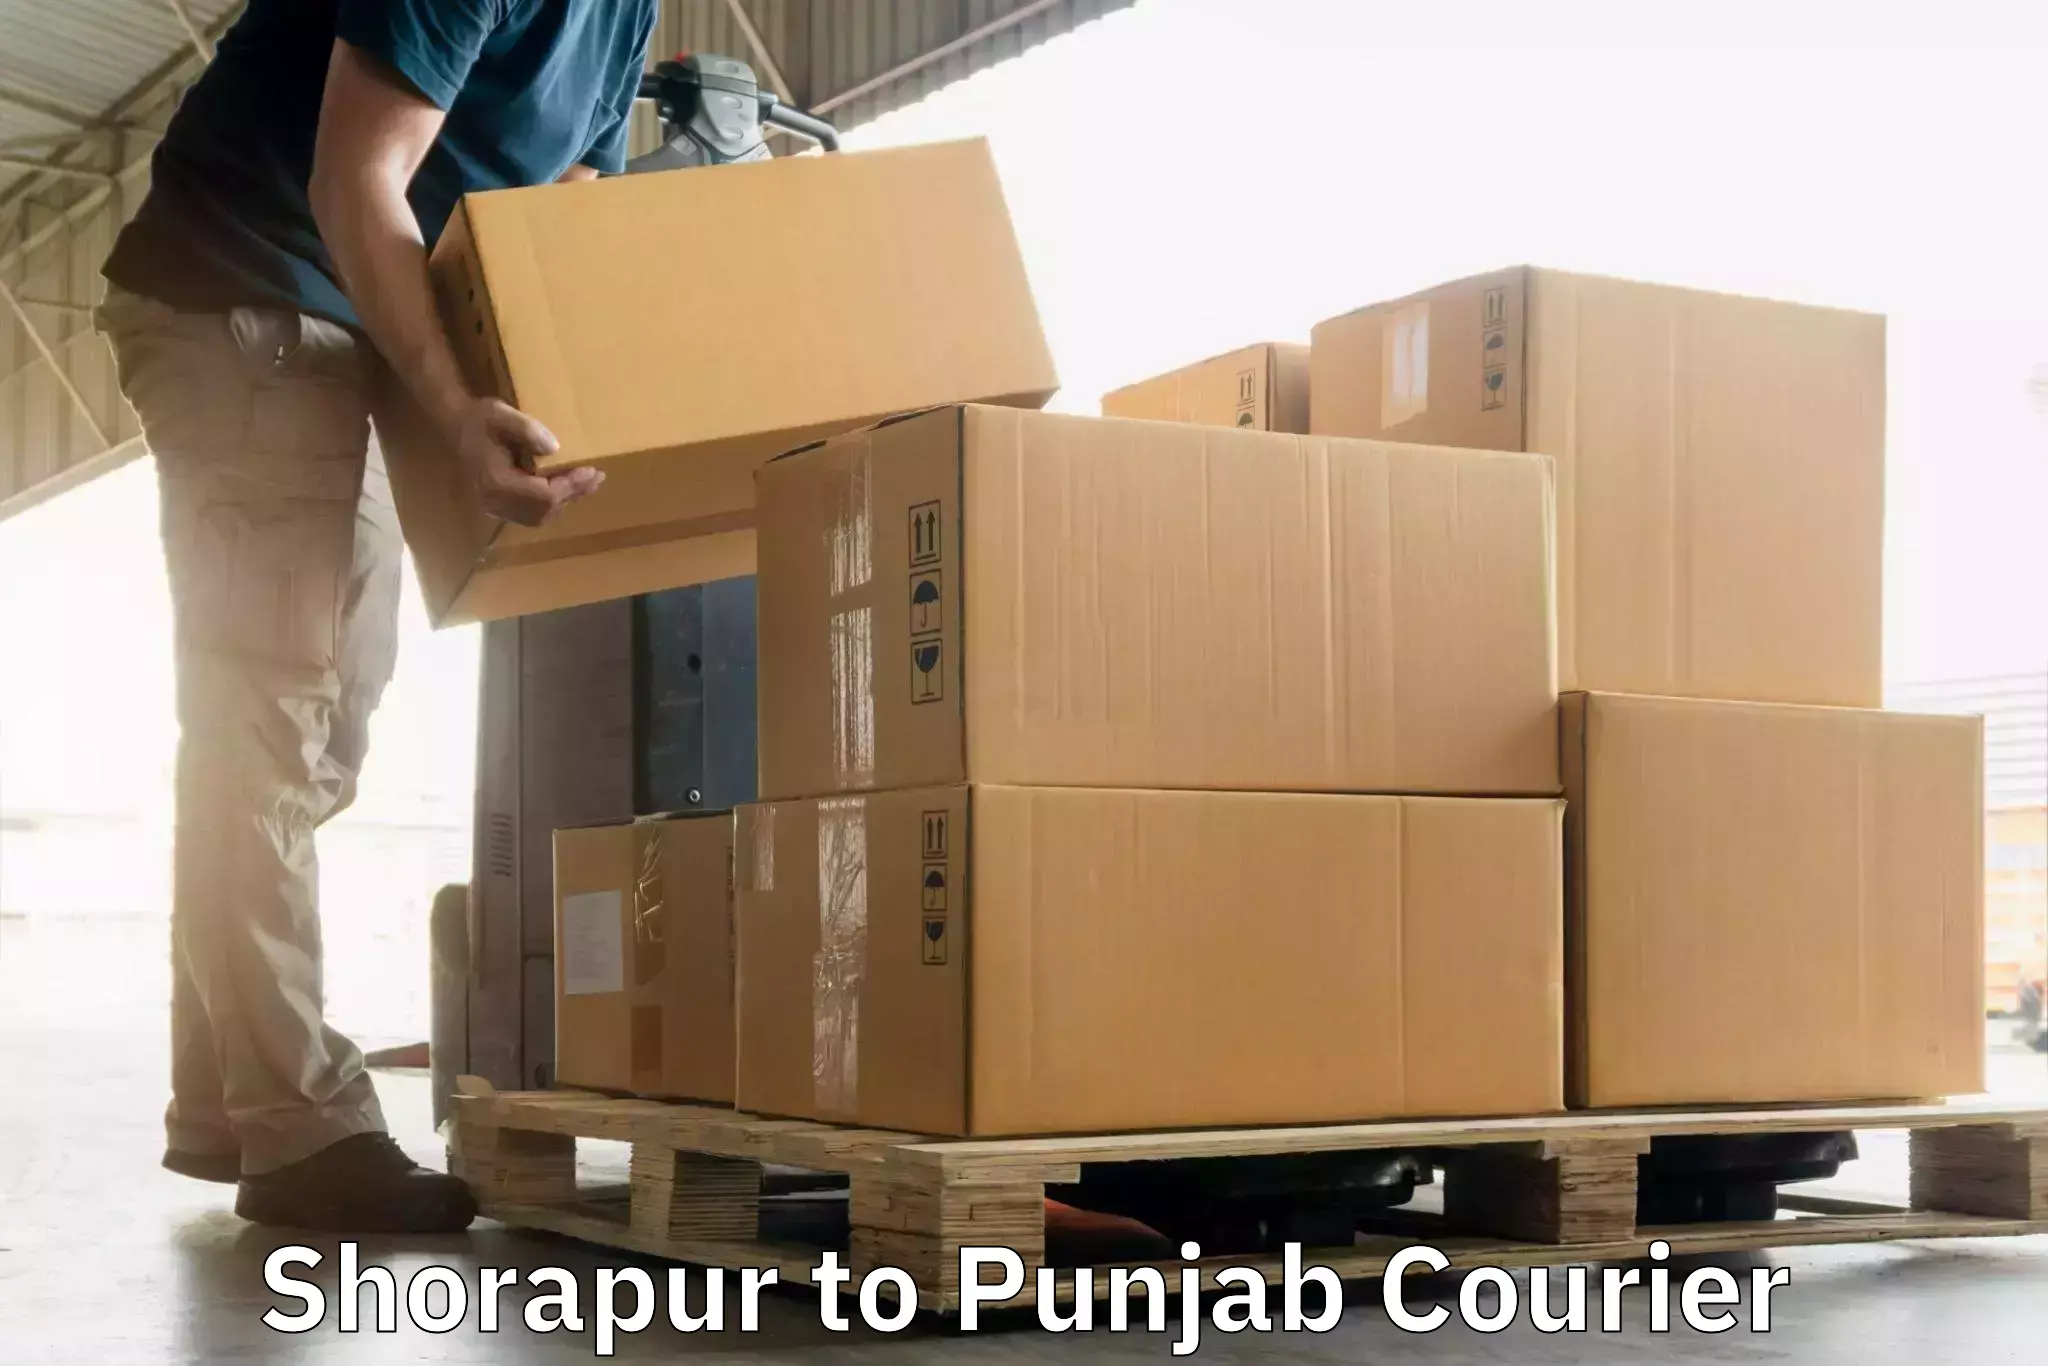 24-hour courier service Shorapur to Rajpura